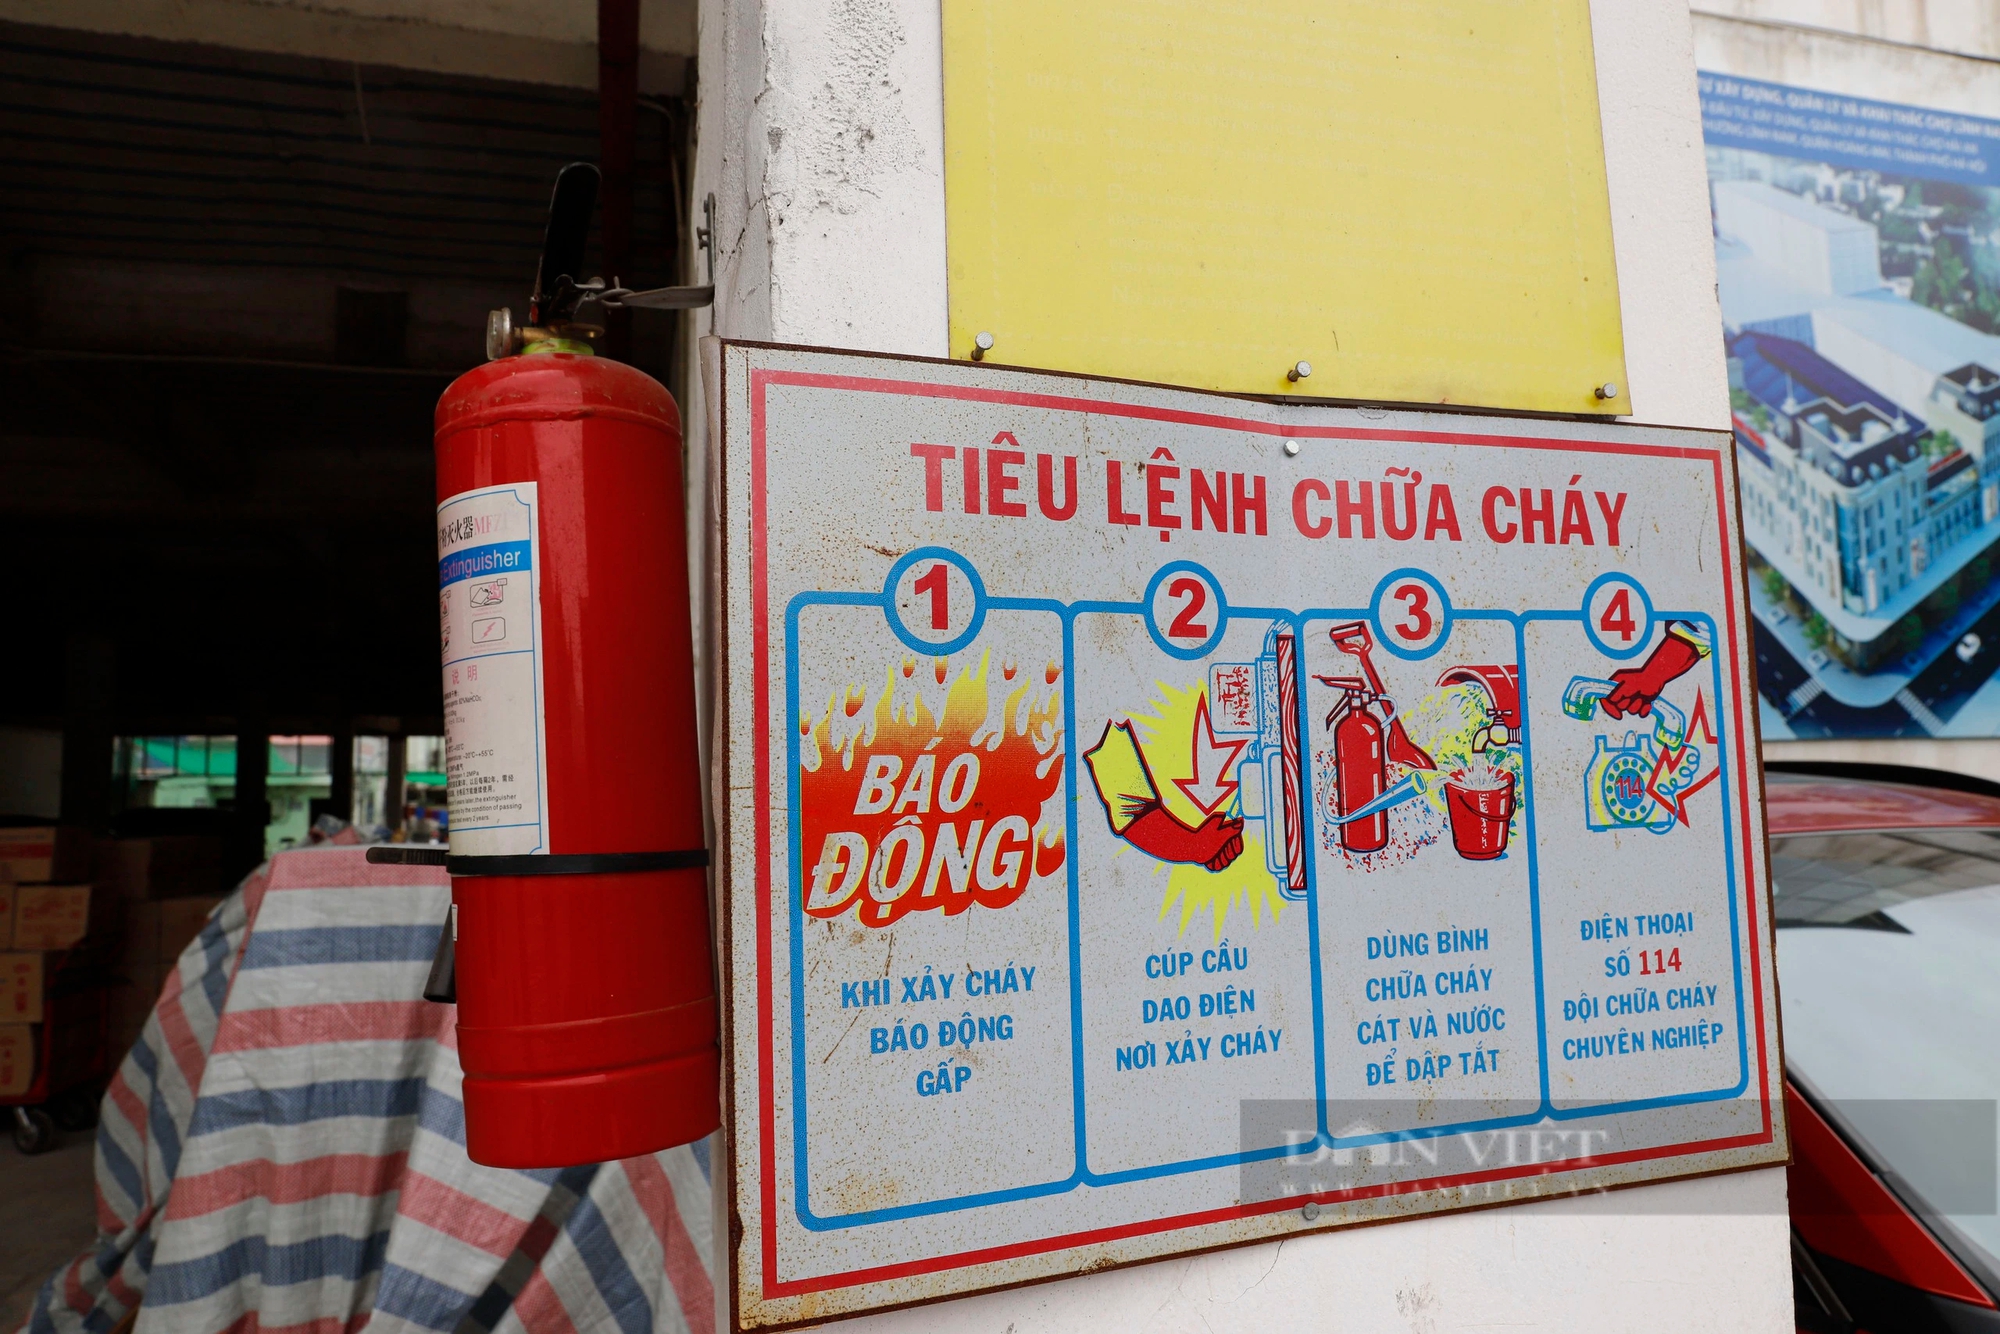 Chợ bỏ hoang ở Hà Nội: BQL viết thư ngỏ mời tiểu thương, kèm ưu đãi nhưng chợ vẫn "vắng như chùa Bà Đanh"- Ảnh 4.